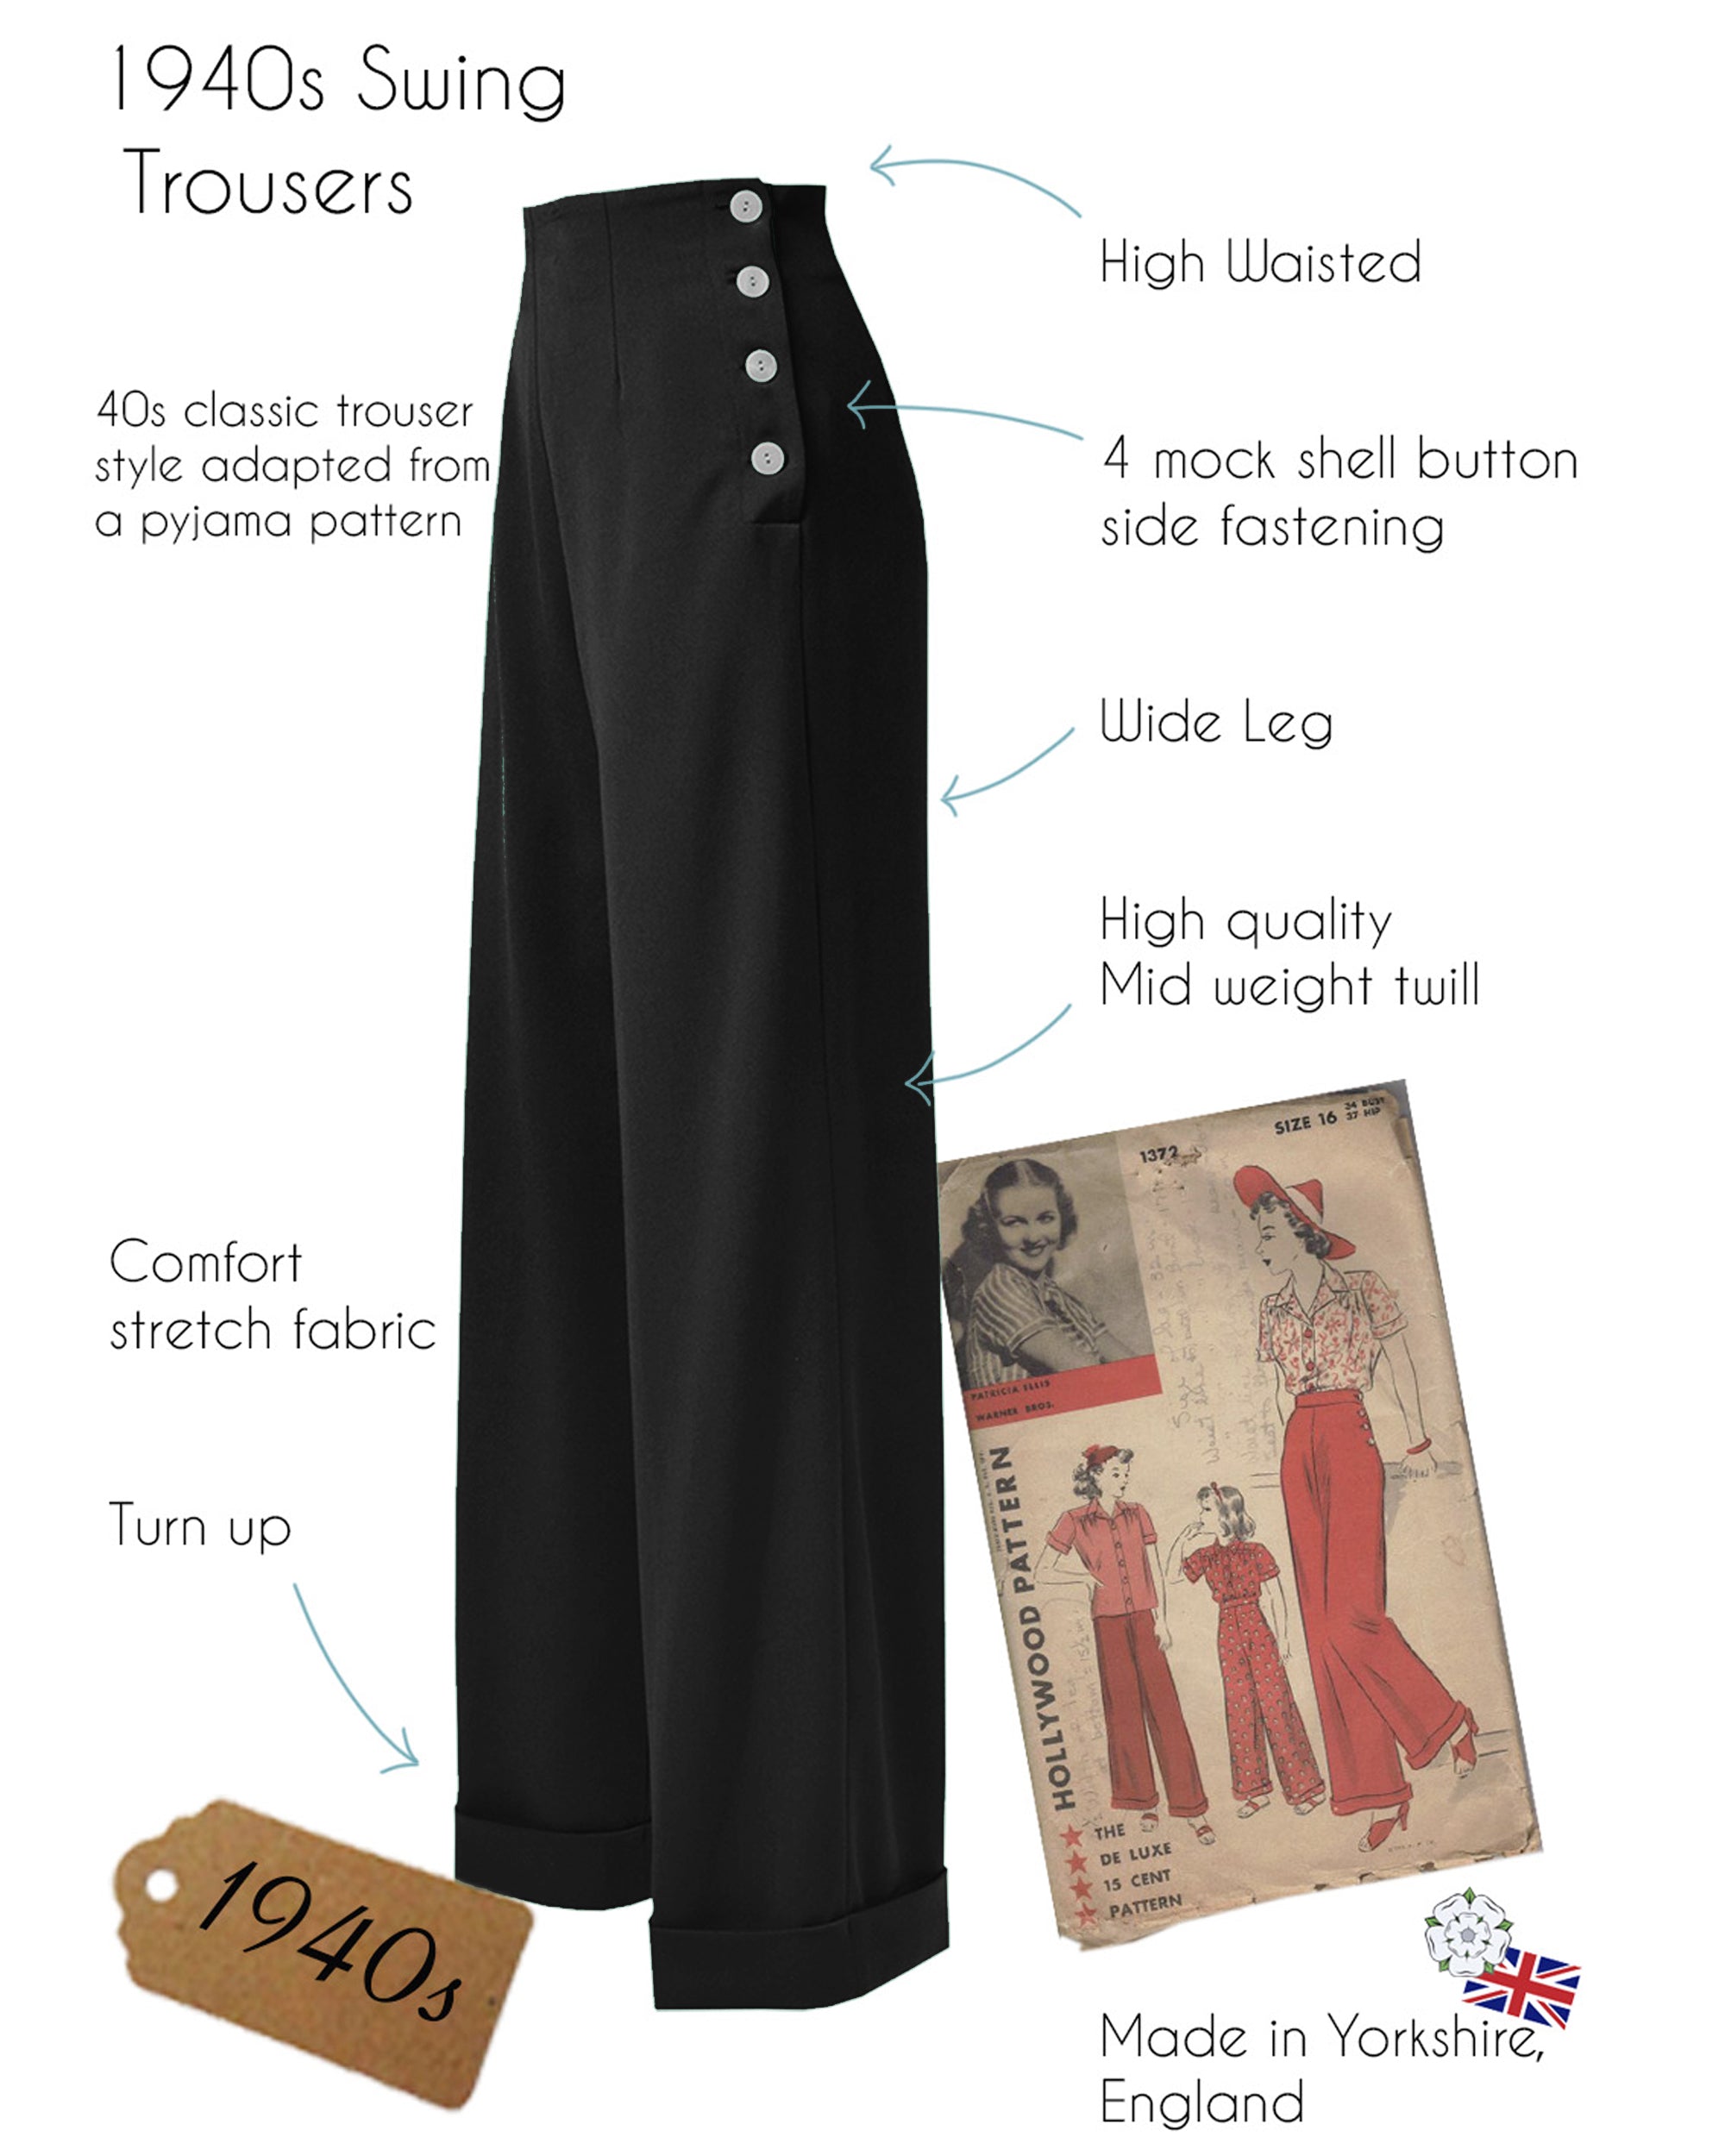 1940s Swing Trousers - Wine